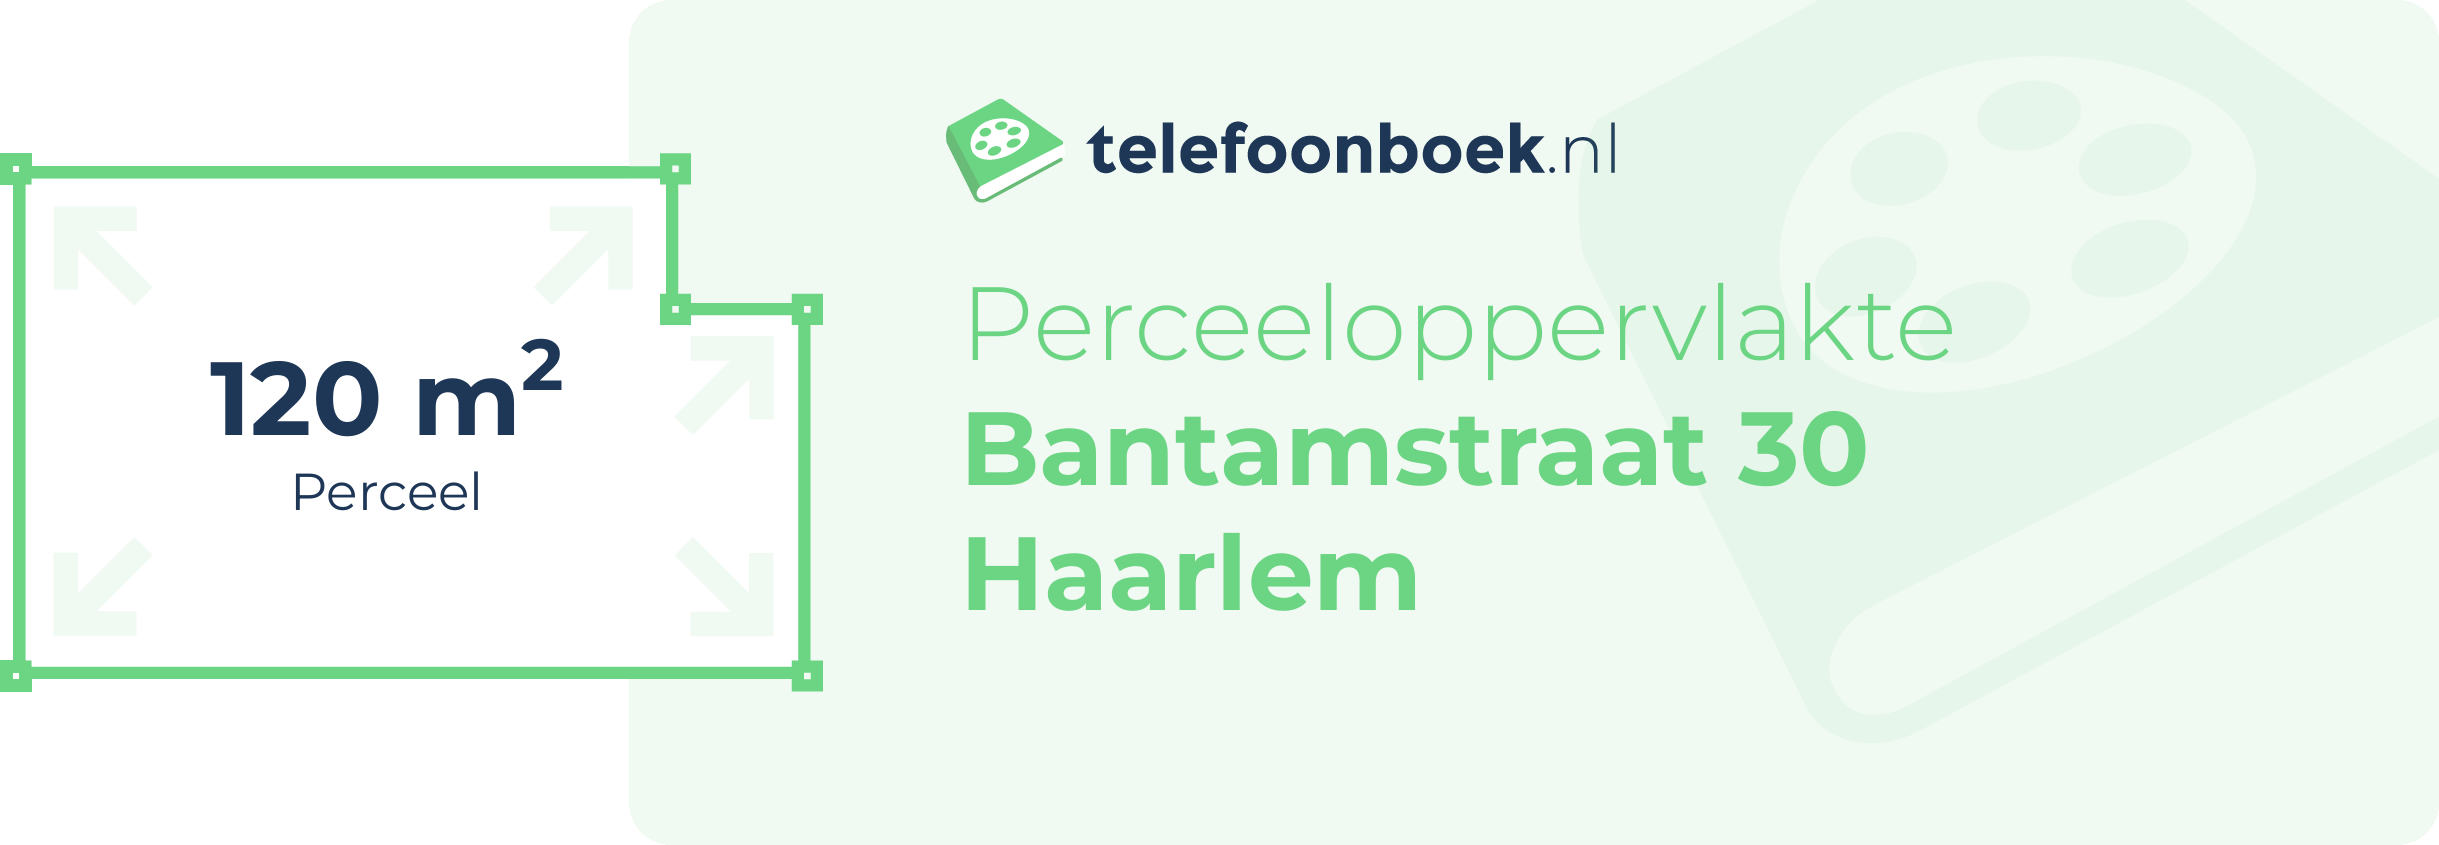 Perceeloppervlakte Bantamstraat 30 Haarlem